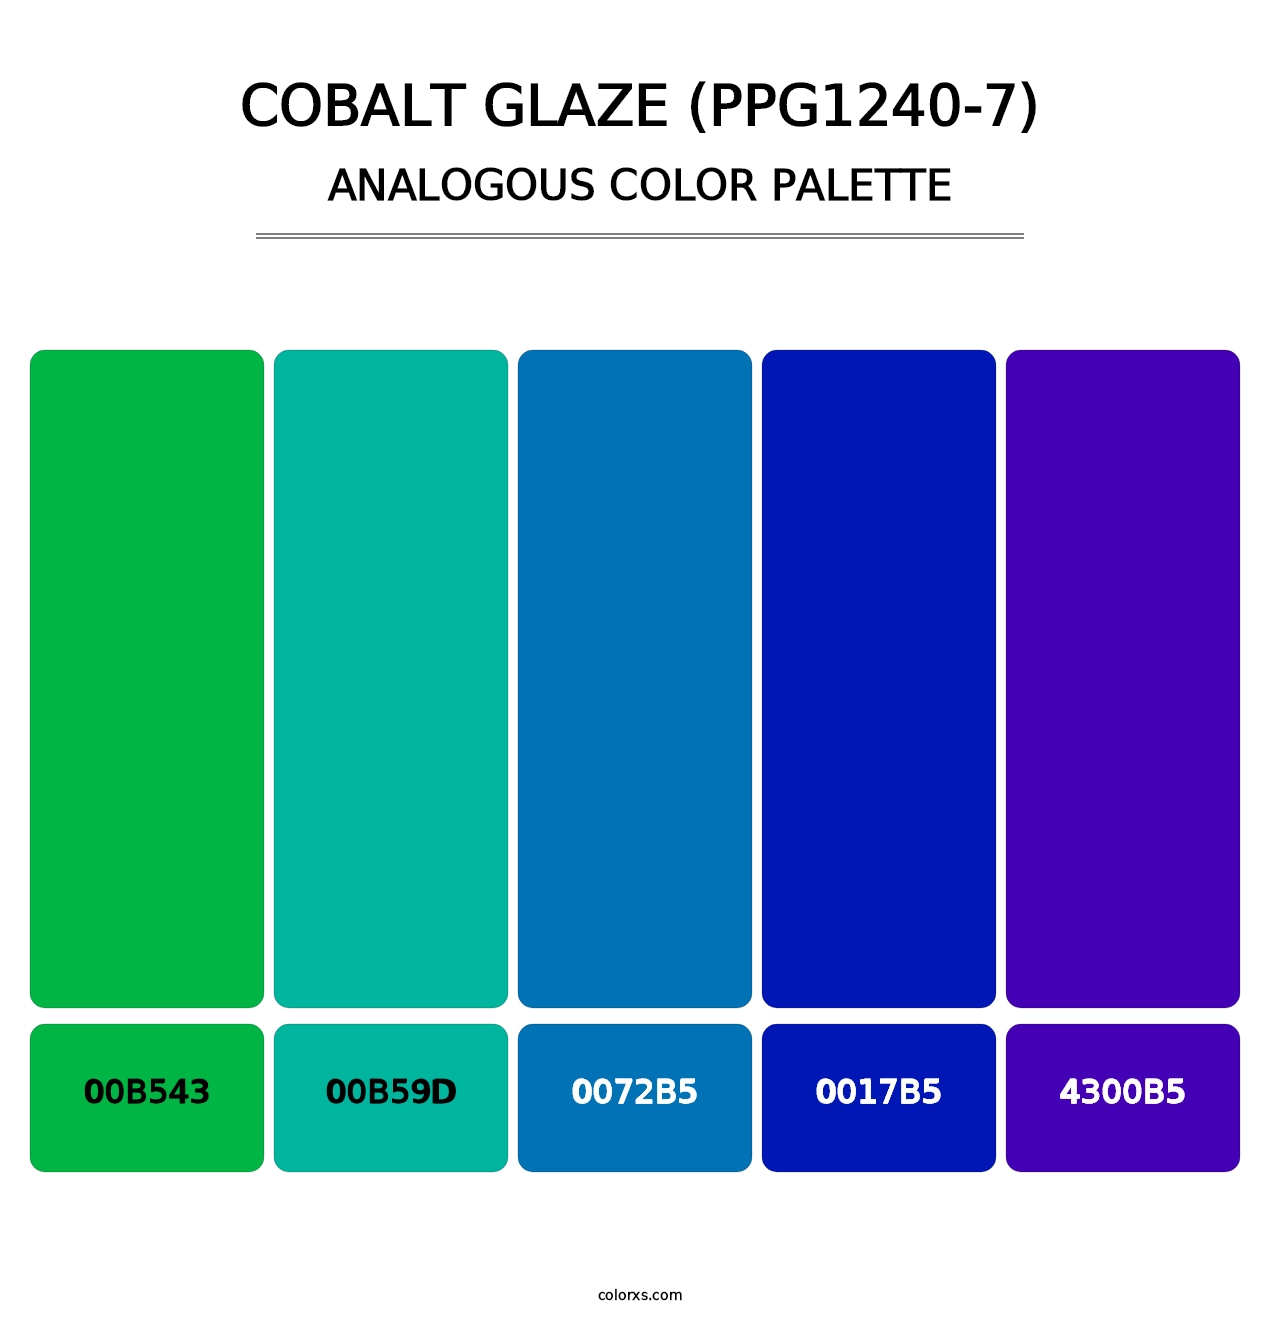 Cobalt Glaze (PPG1240-7) - Analogous Color Palette